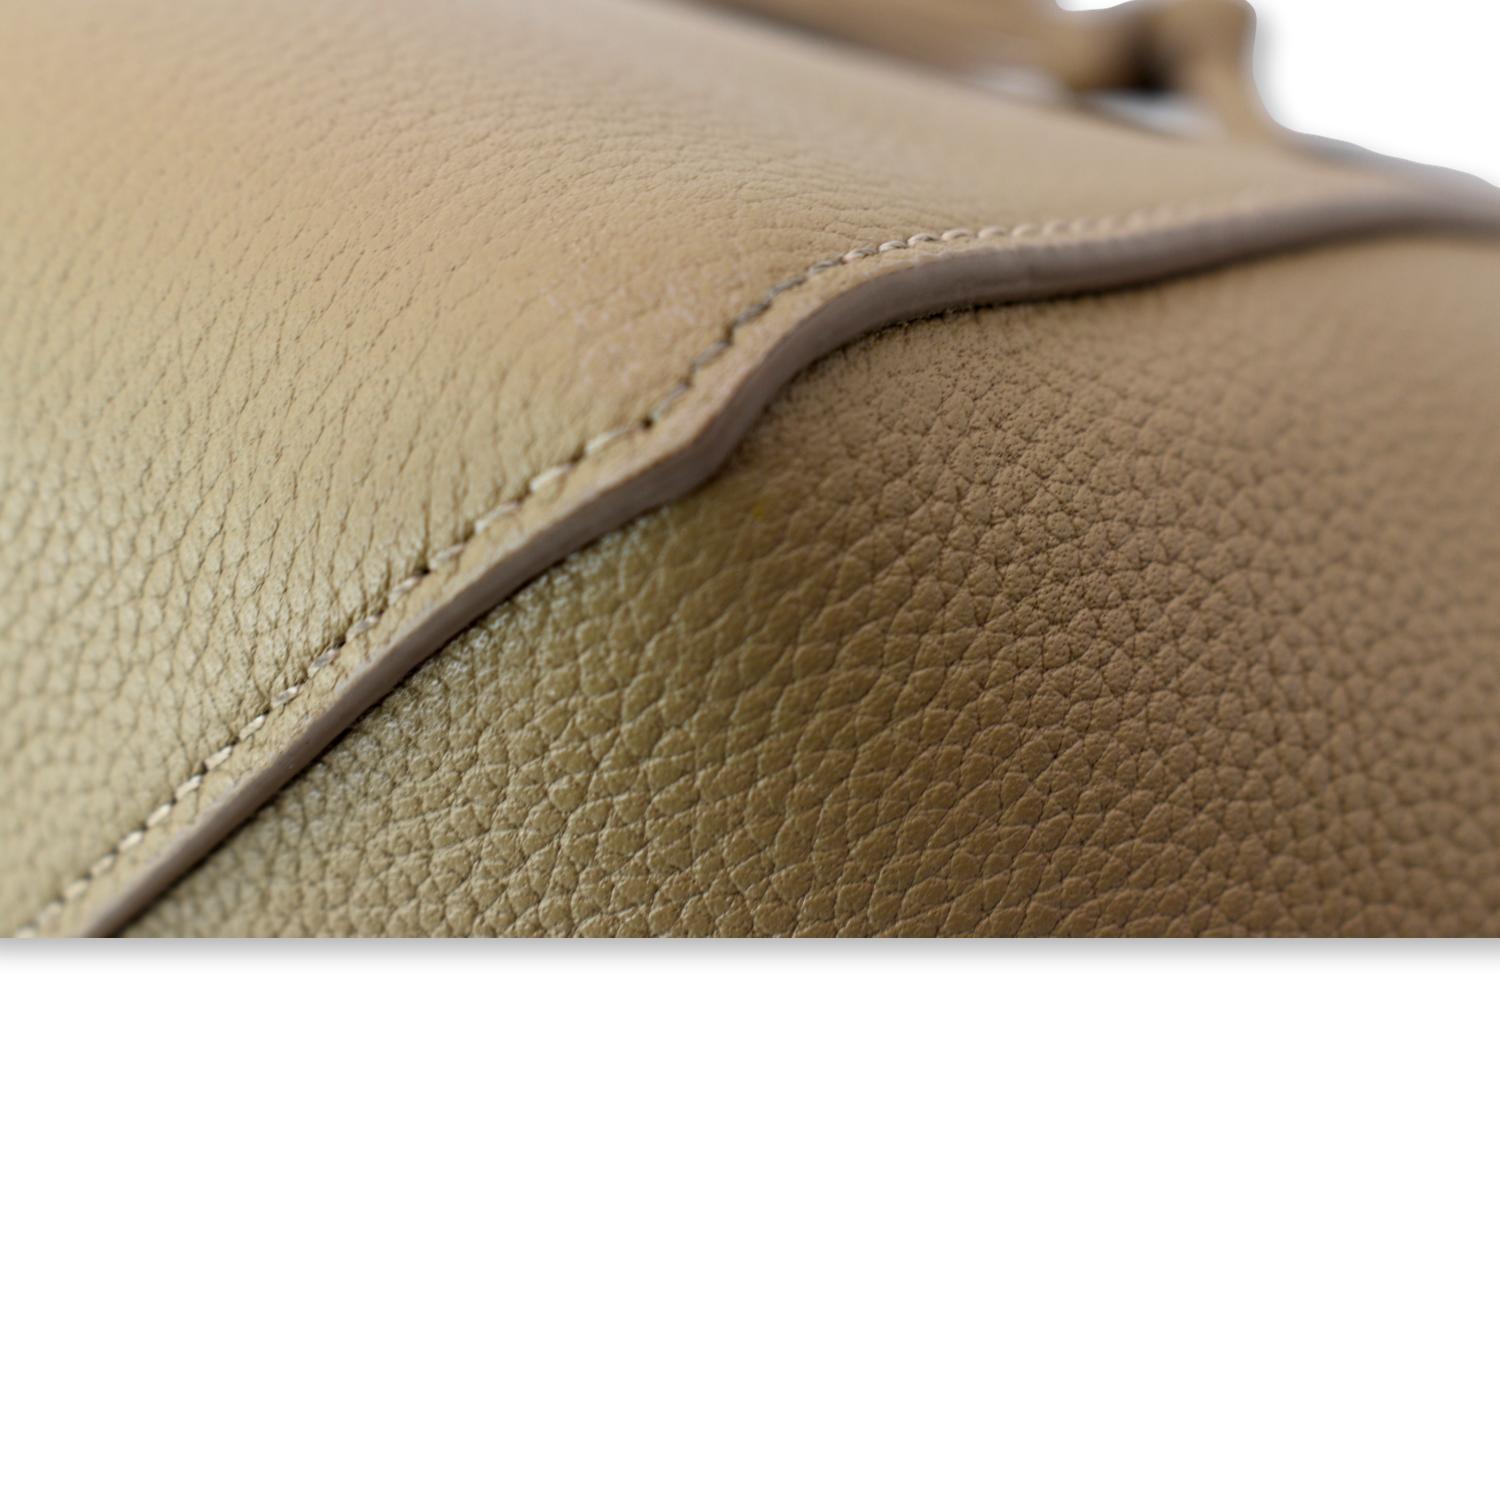 Celine Phantom Cabas Tote Cream Grained Leather Large Shoulder Bag